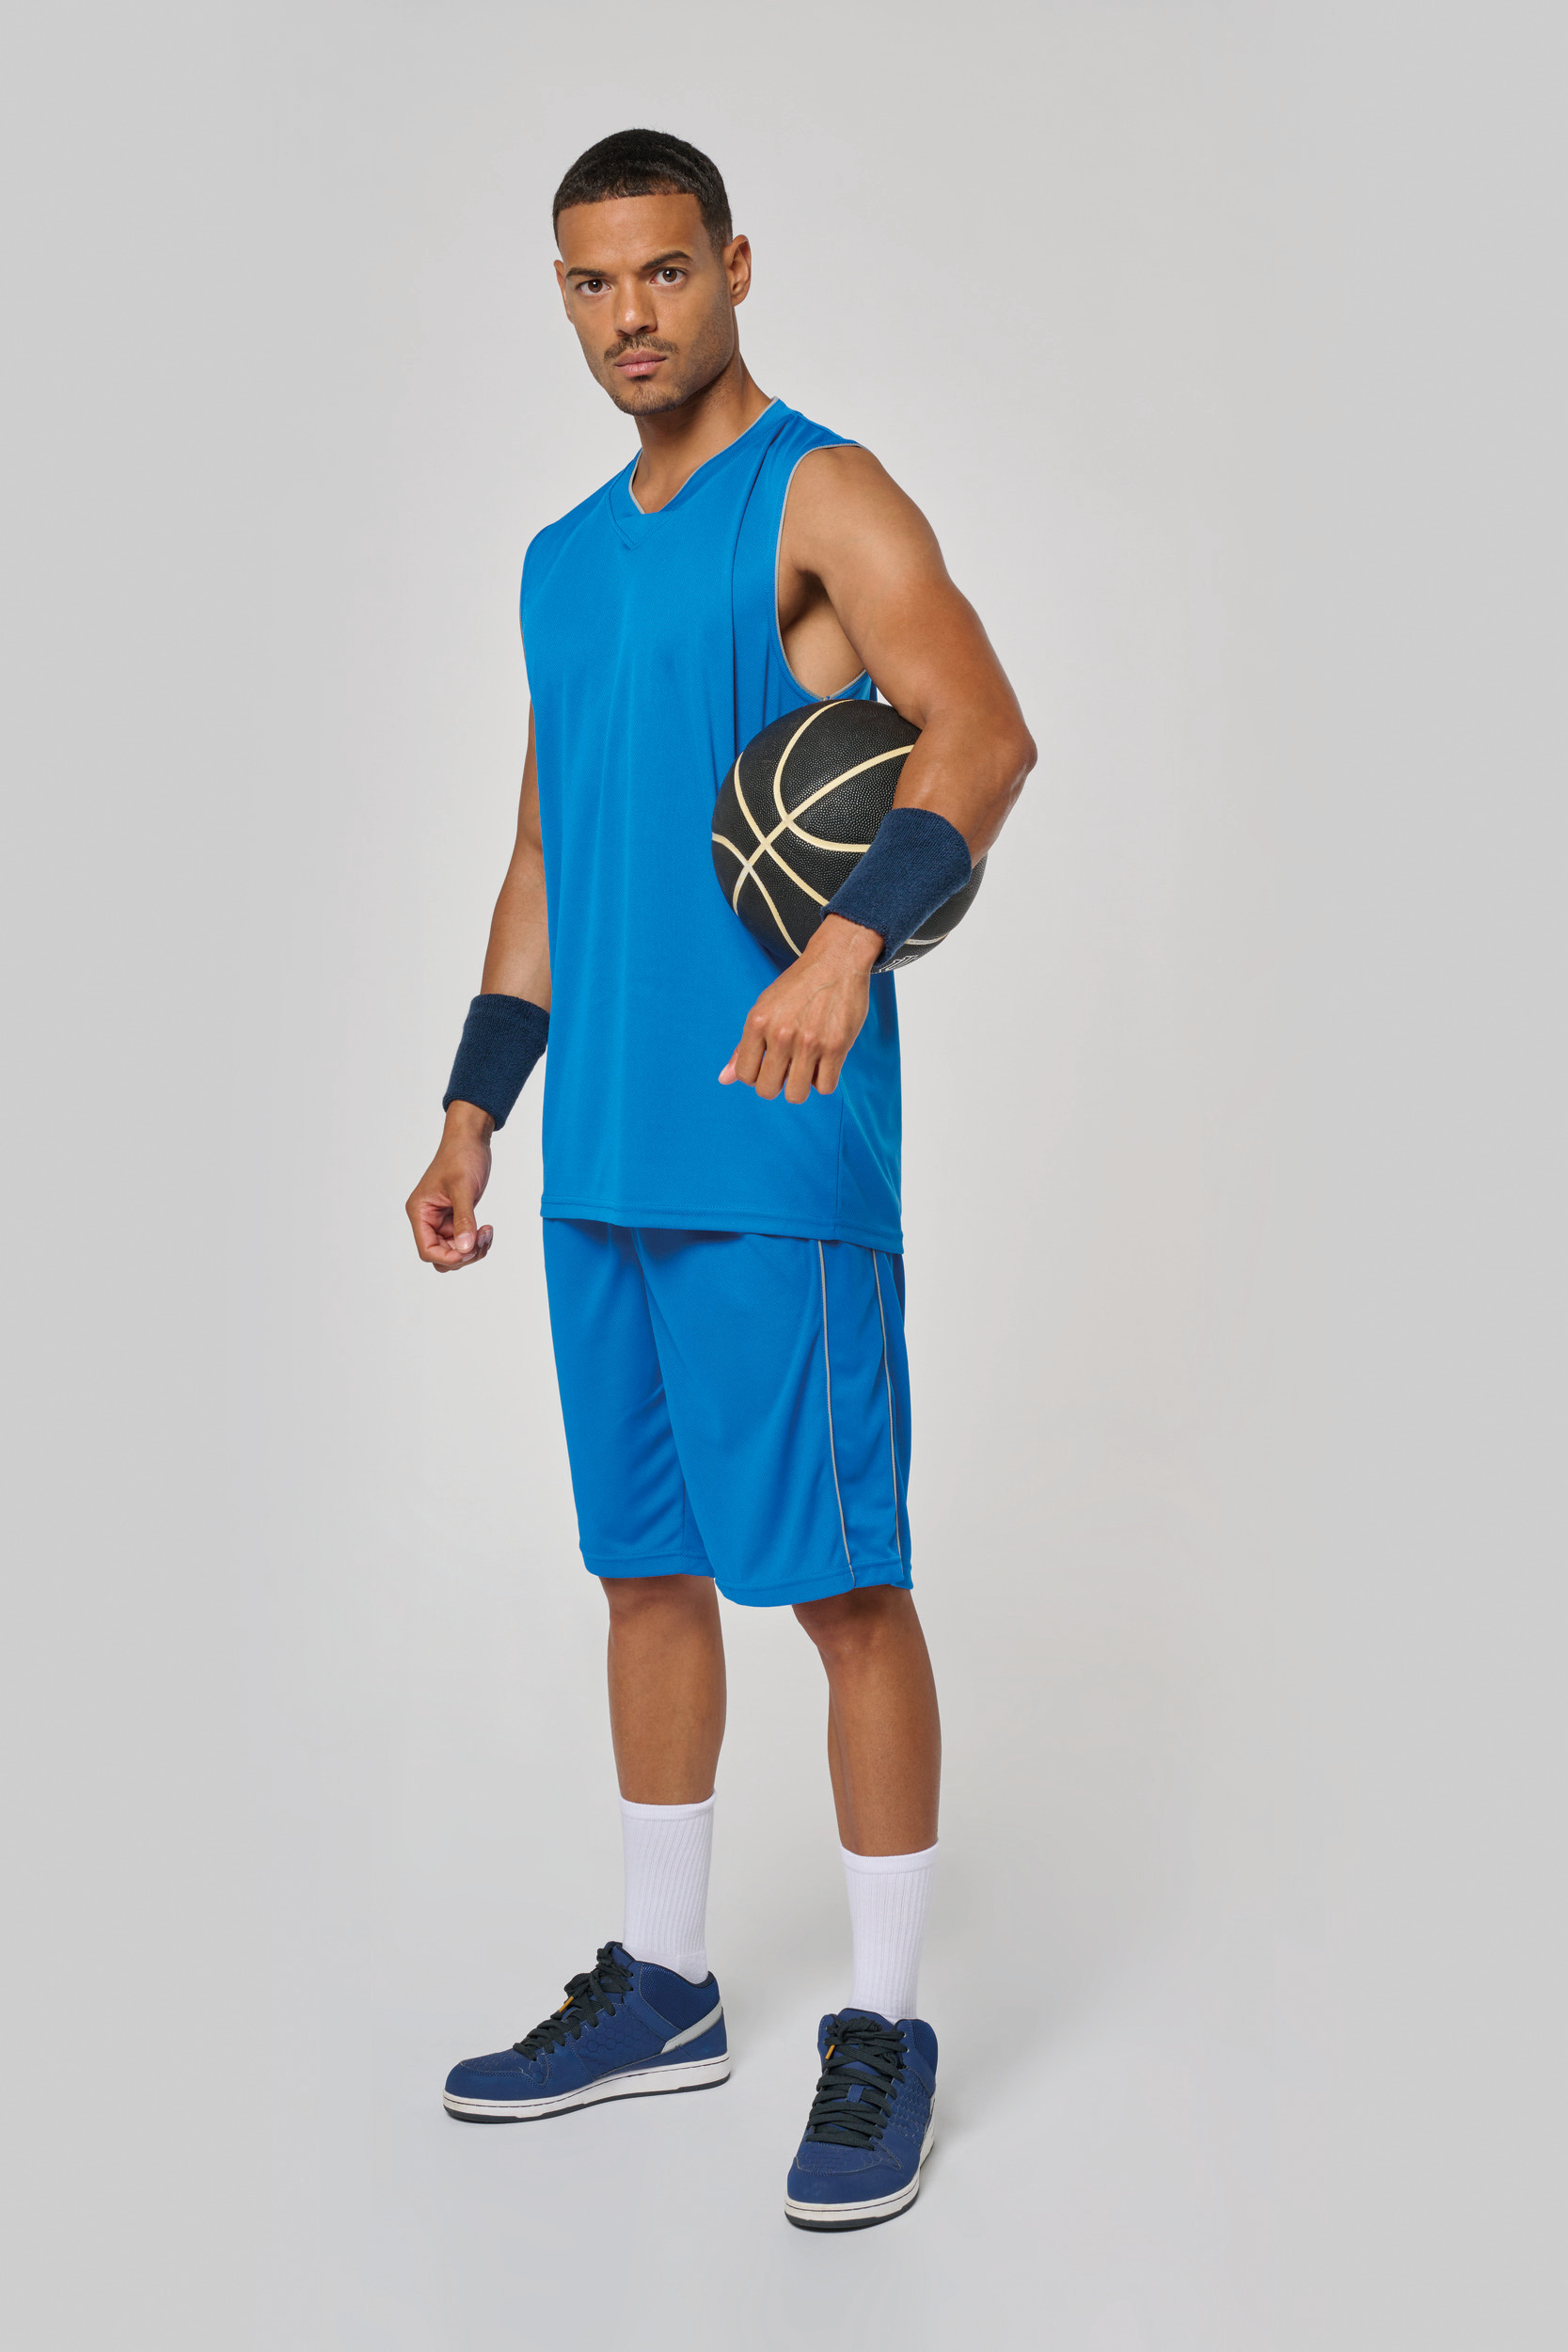 Camiseta Baloncesto personalizada - Regalos originales personalizados!